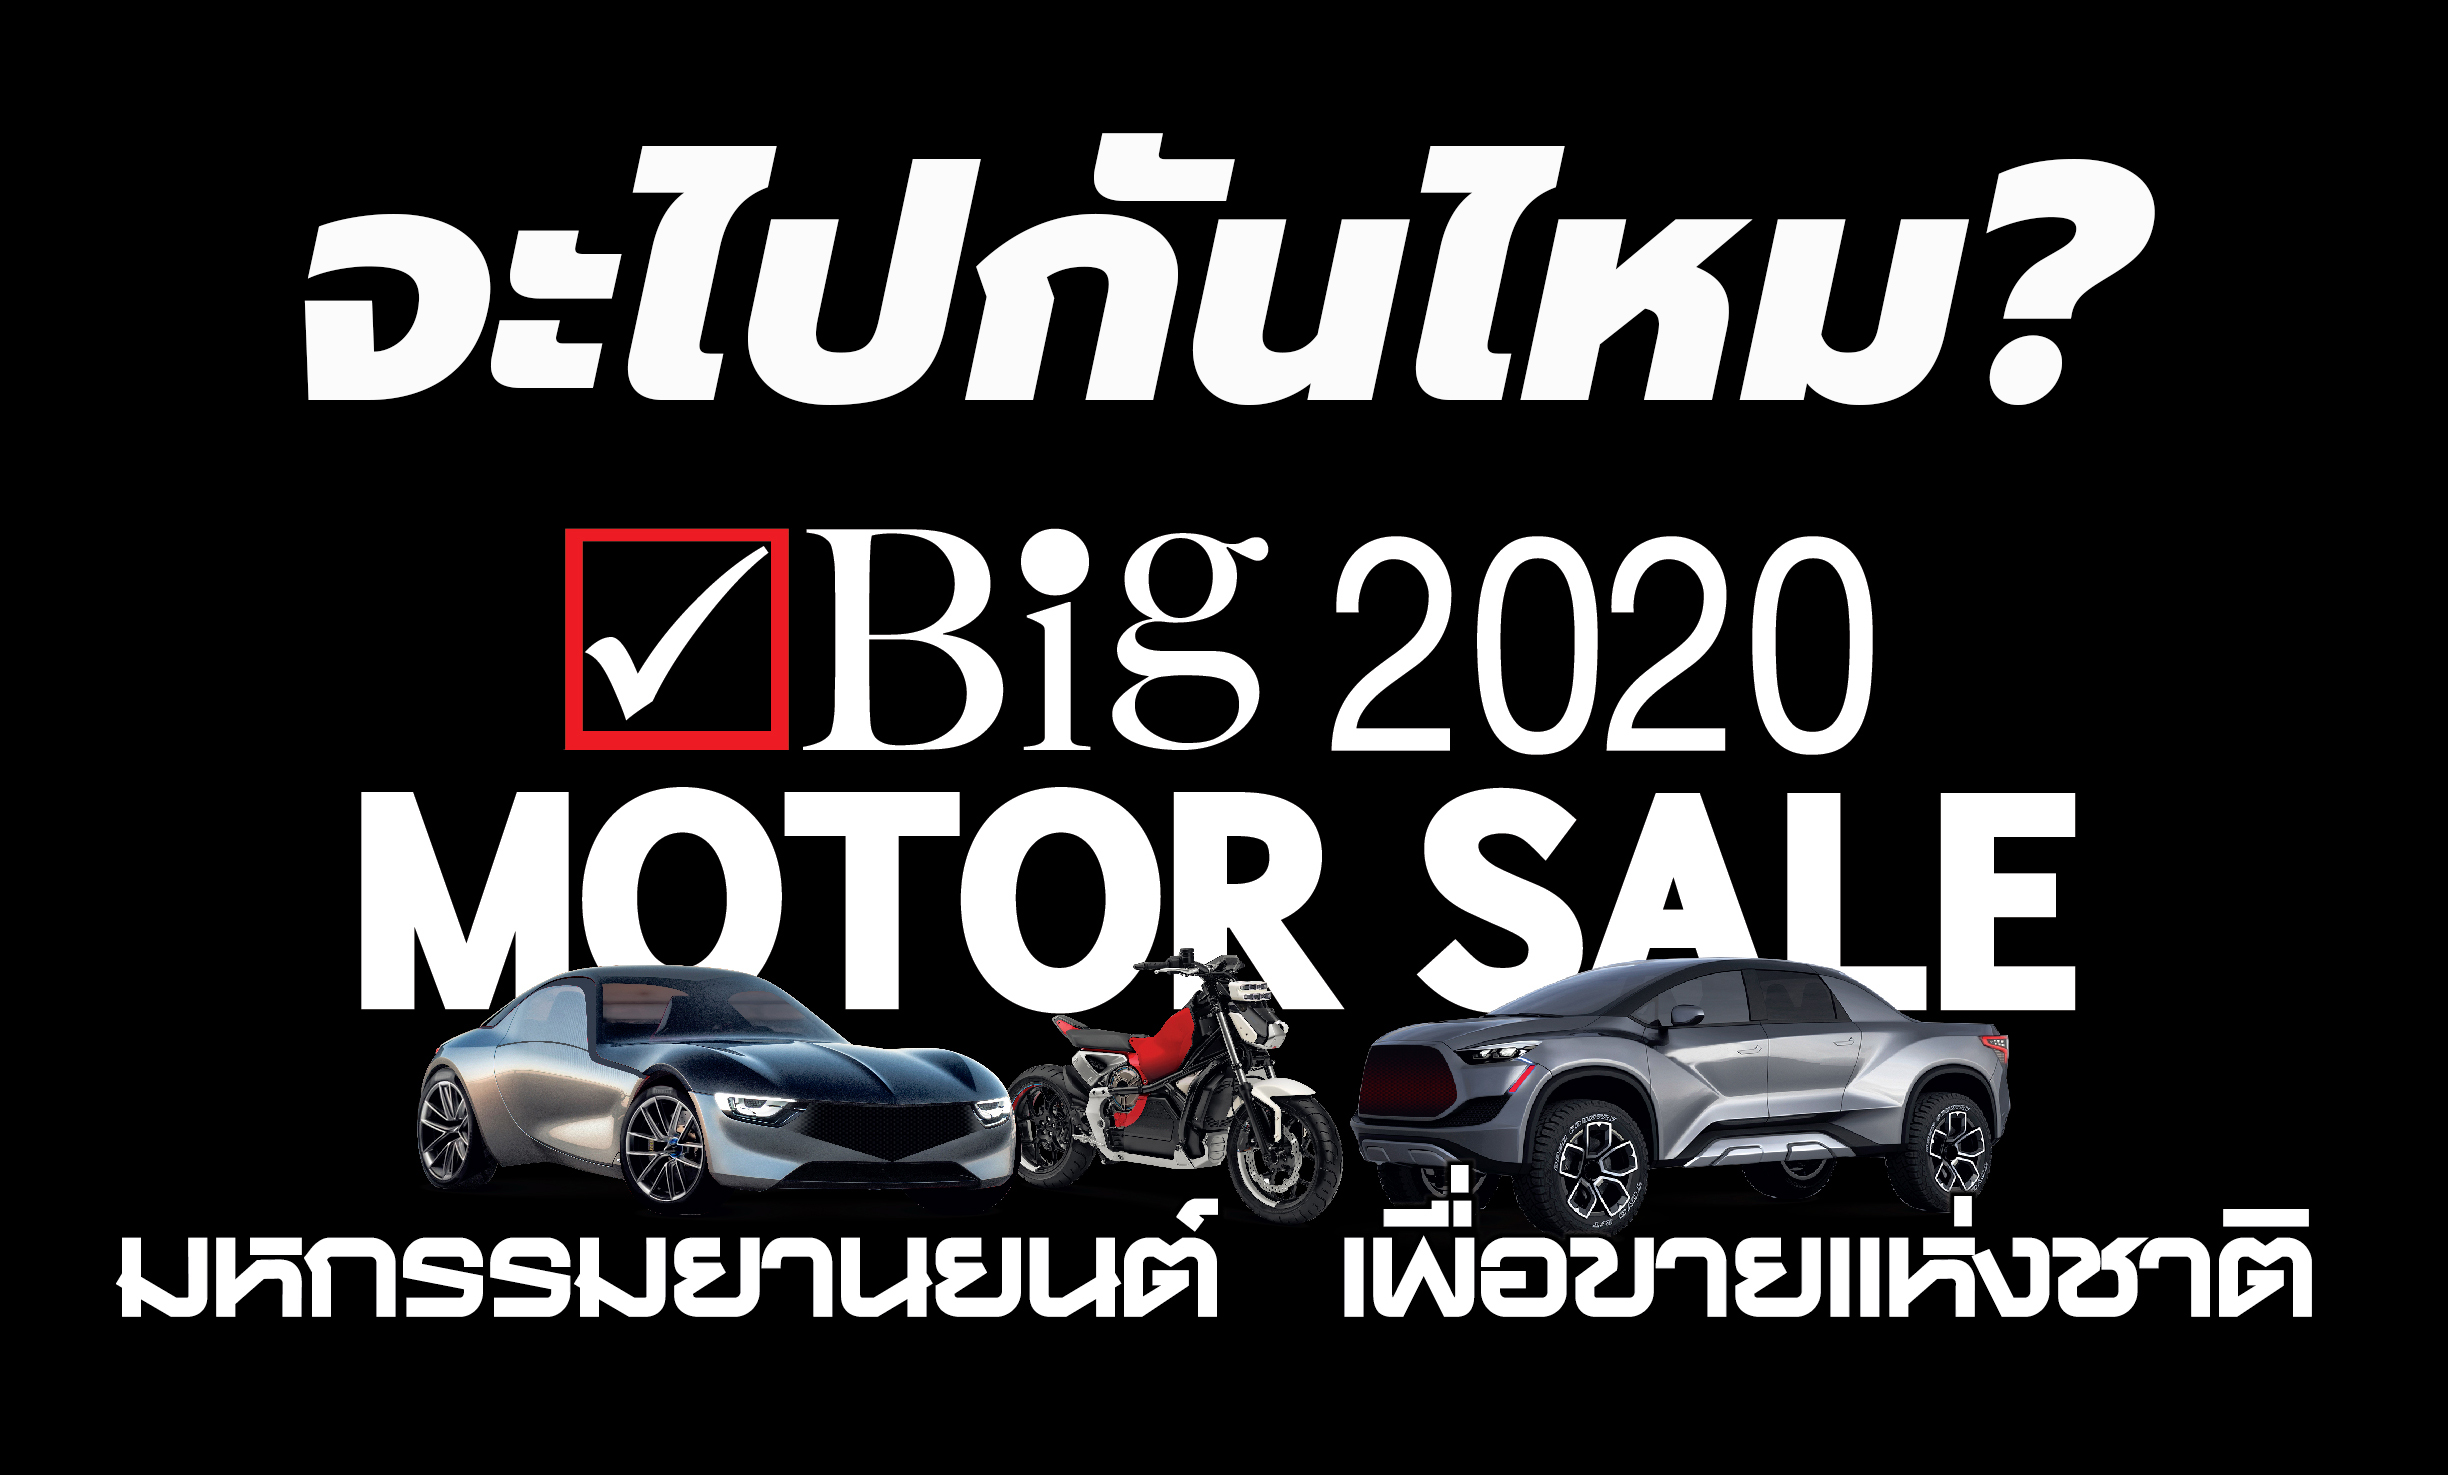 ฺBig Motor Sale 2020 Thailand